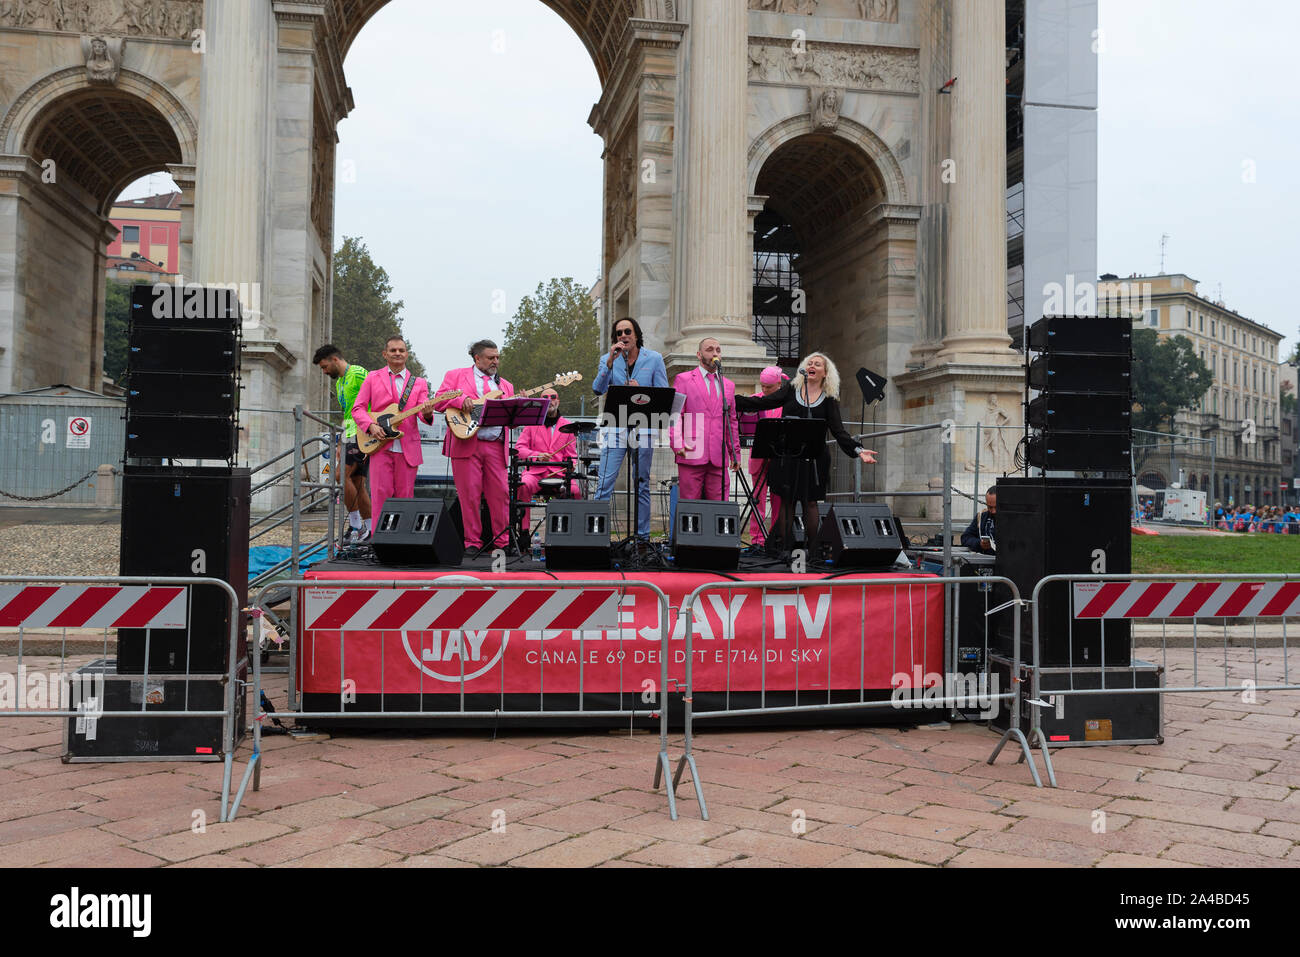 Milano, Italia - 13 ottobre 2019: 'I cormorani' gruppo musicale accoglie i piloti in arrivo per celebrare il deejay Ten, esecuzione di un evento organizzato Foto Stock